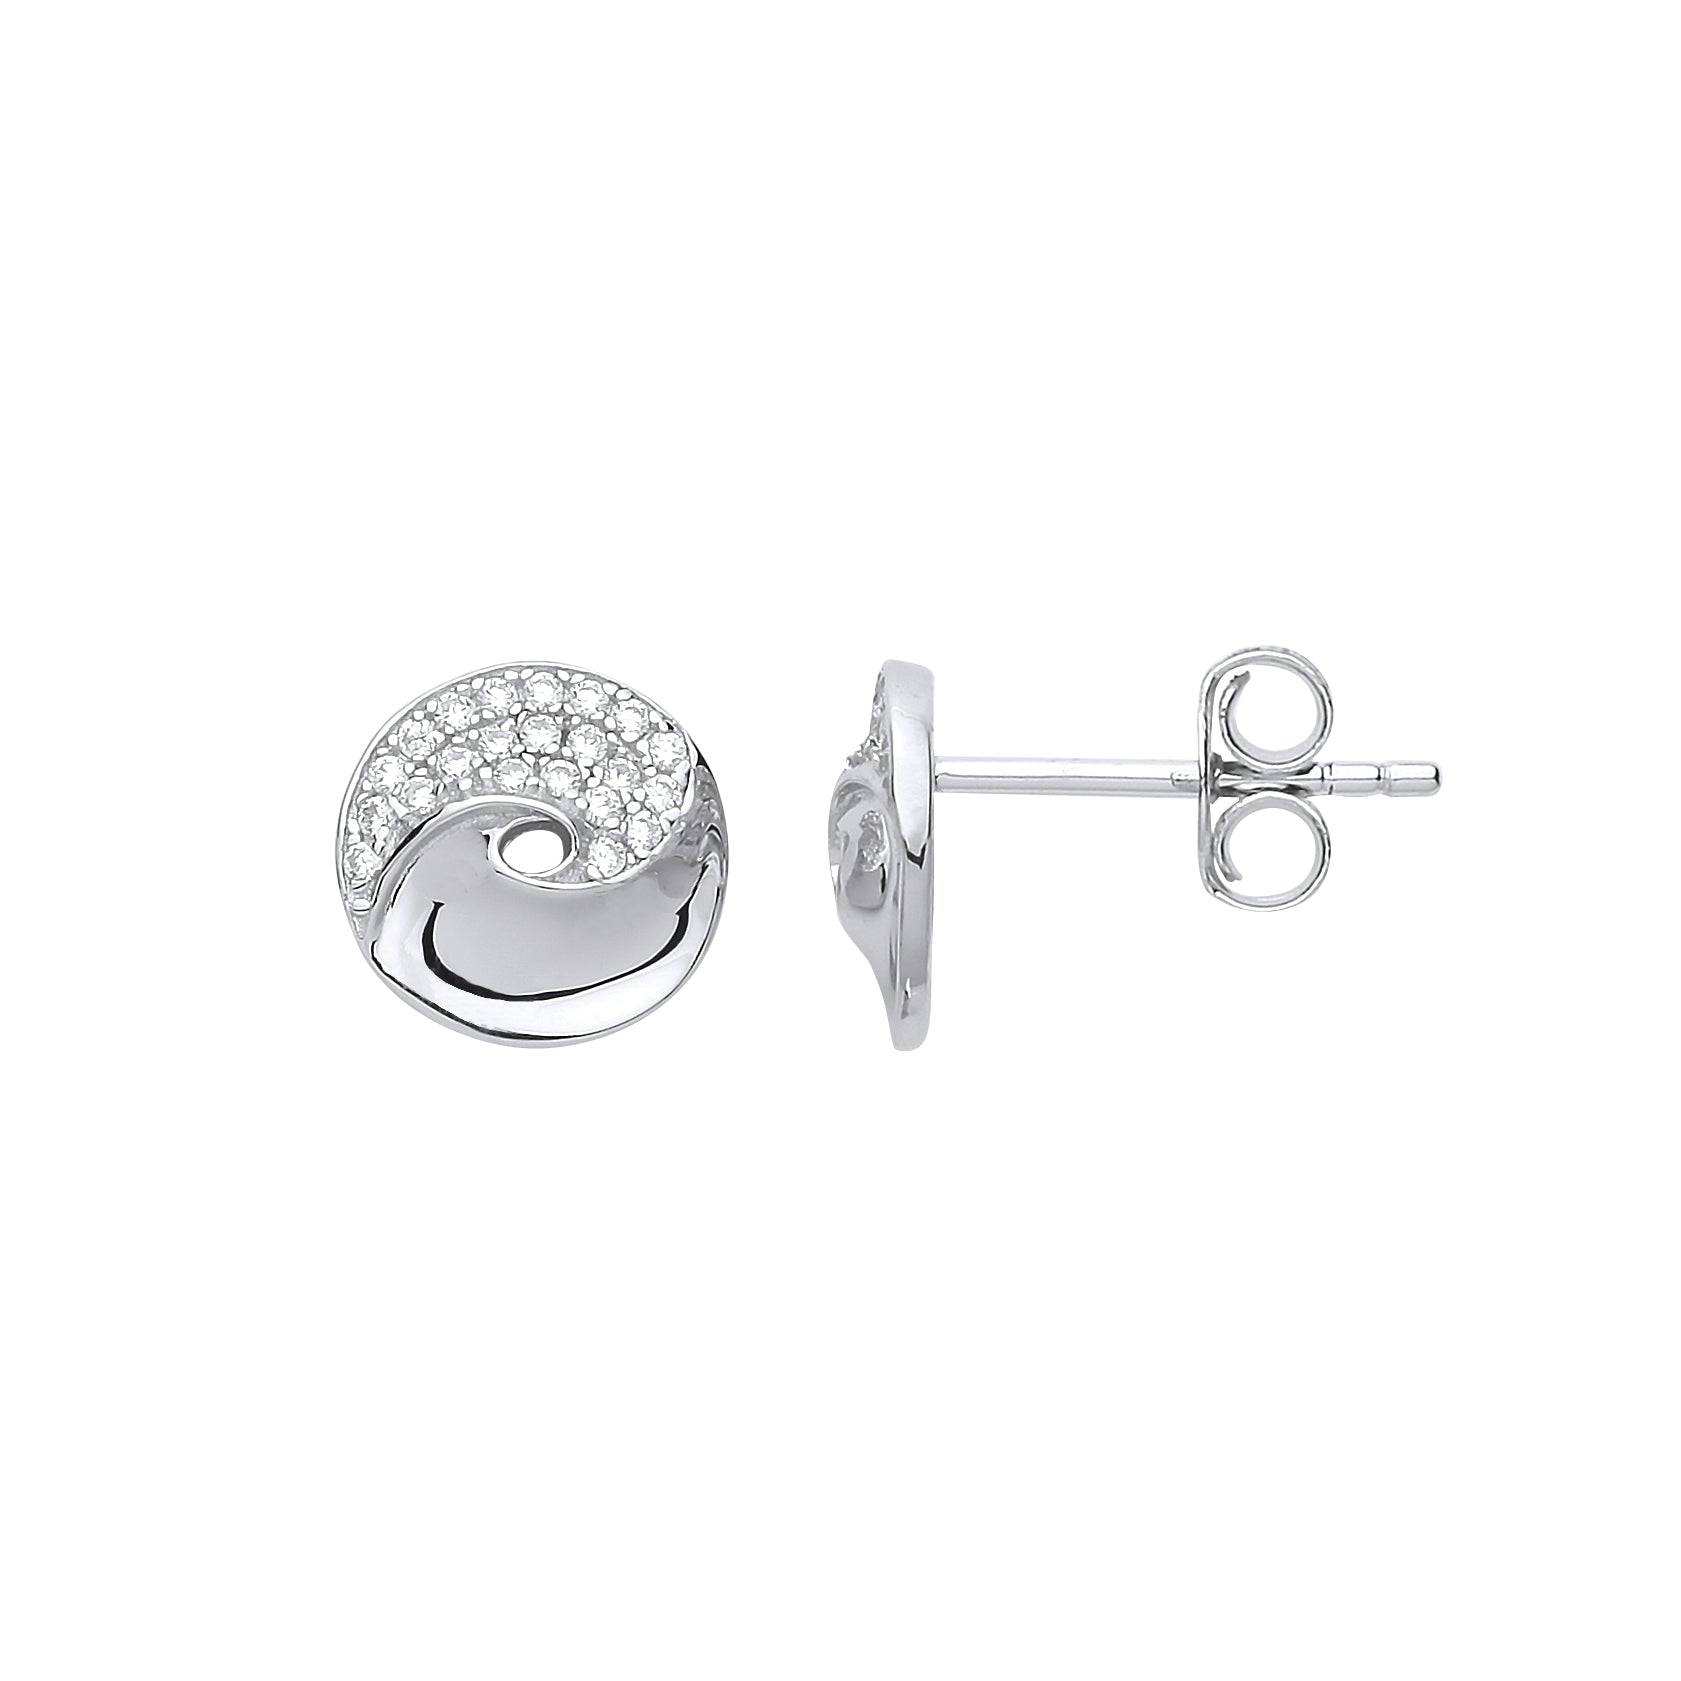 Silver  CZ Donut Swirl Stud Earrings - GVE720